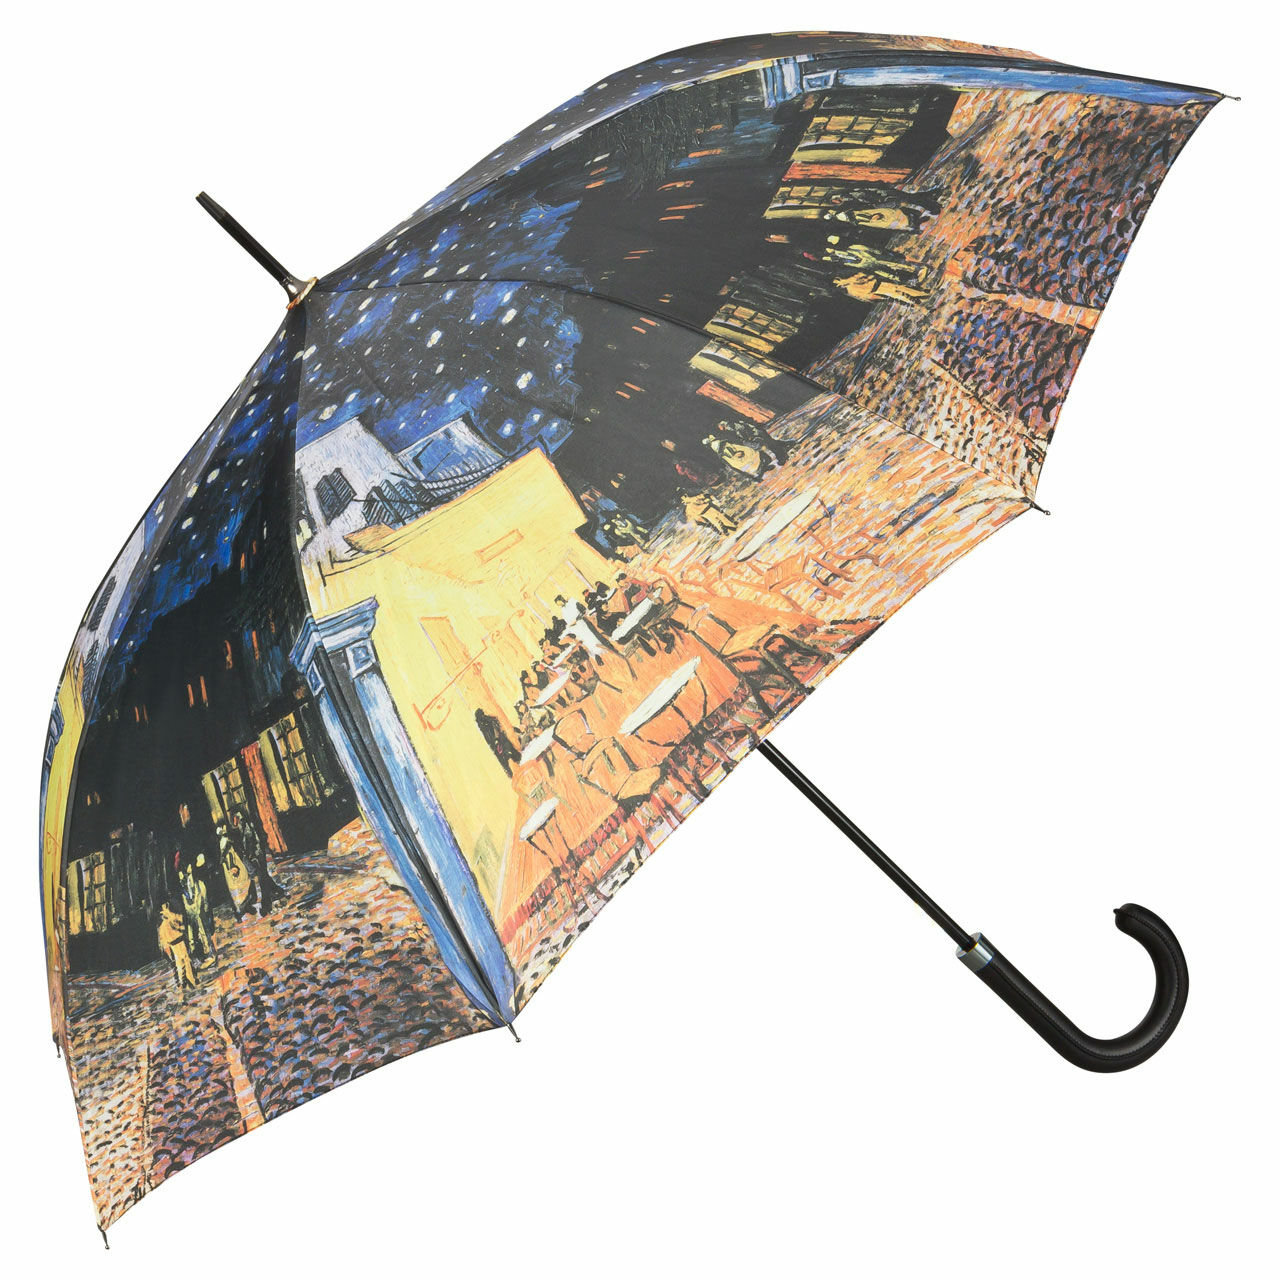 Stick umbrella "Night Café" by Vincent van Gogh